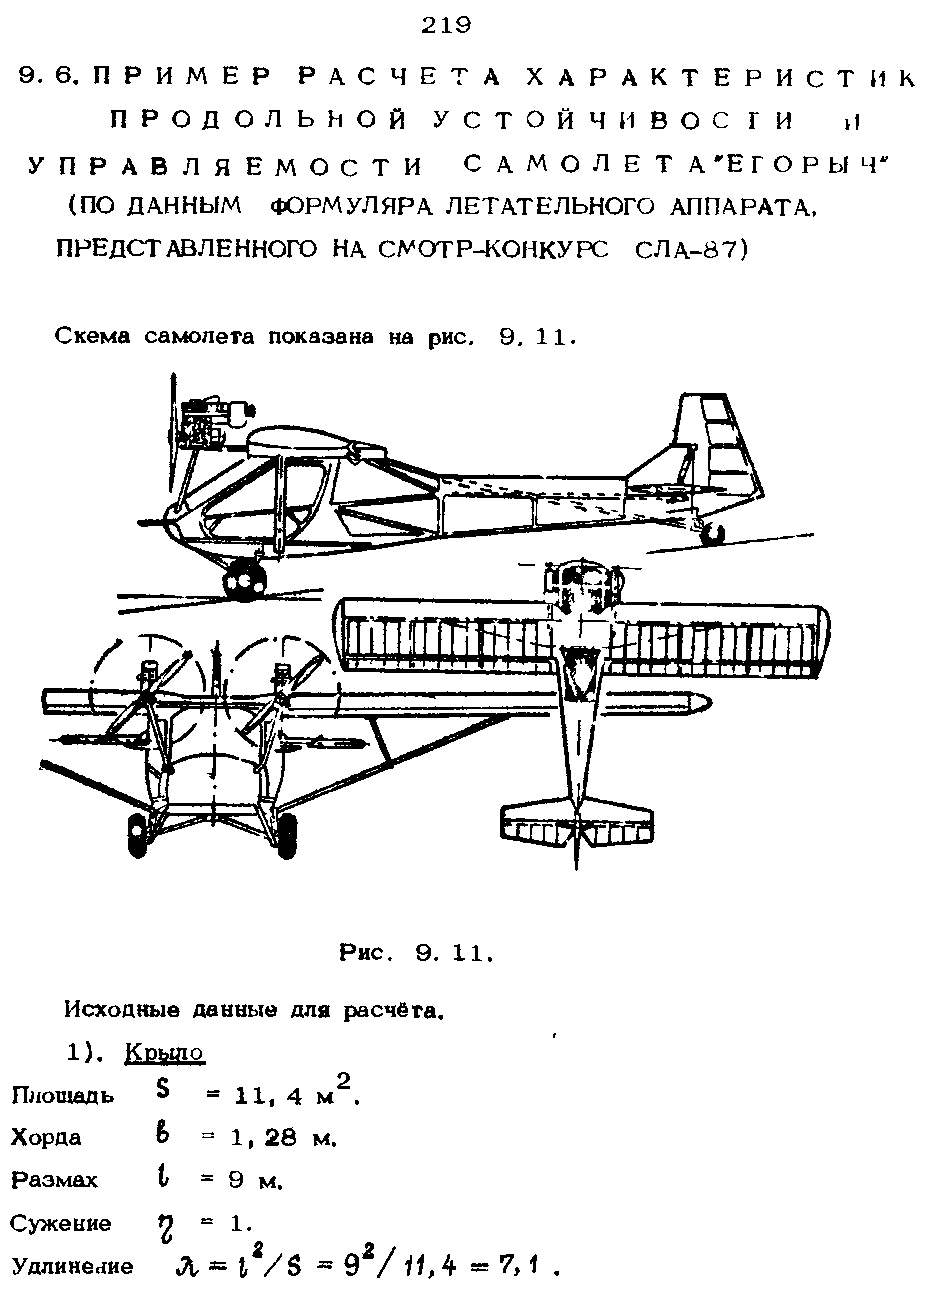 Схема самолета показана на рис. 9. 11.
